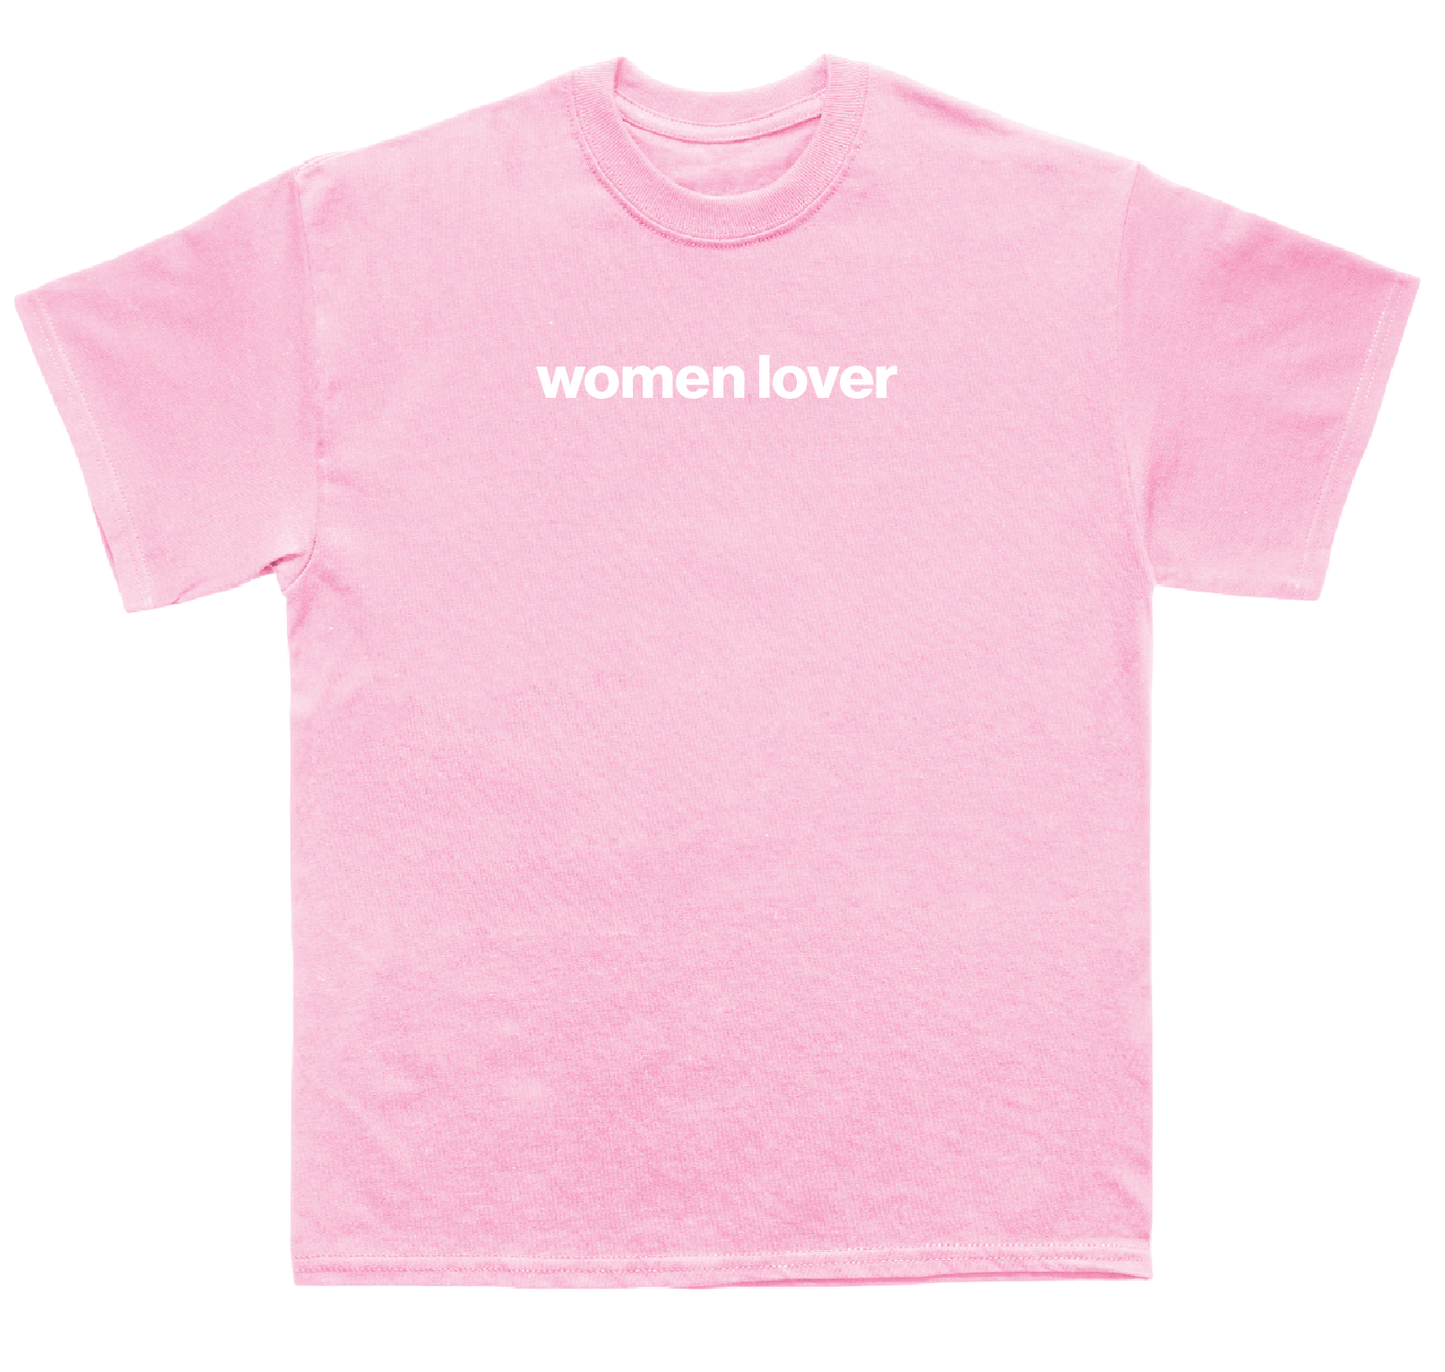 women lover shirt